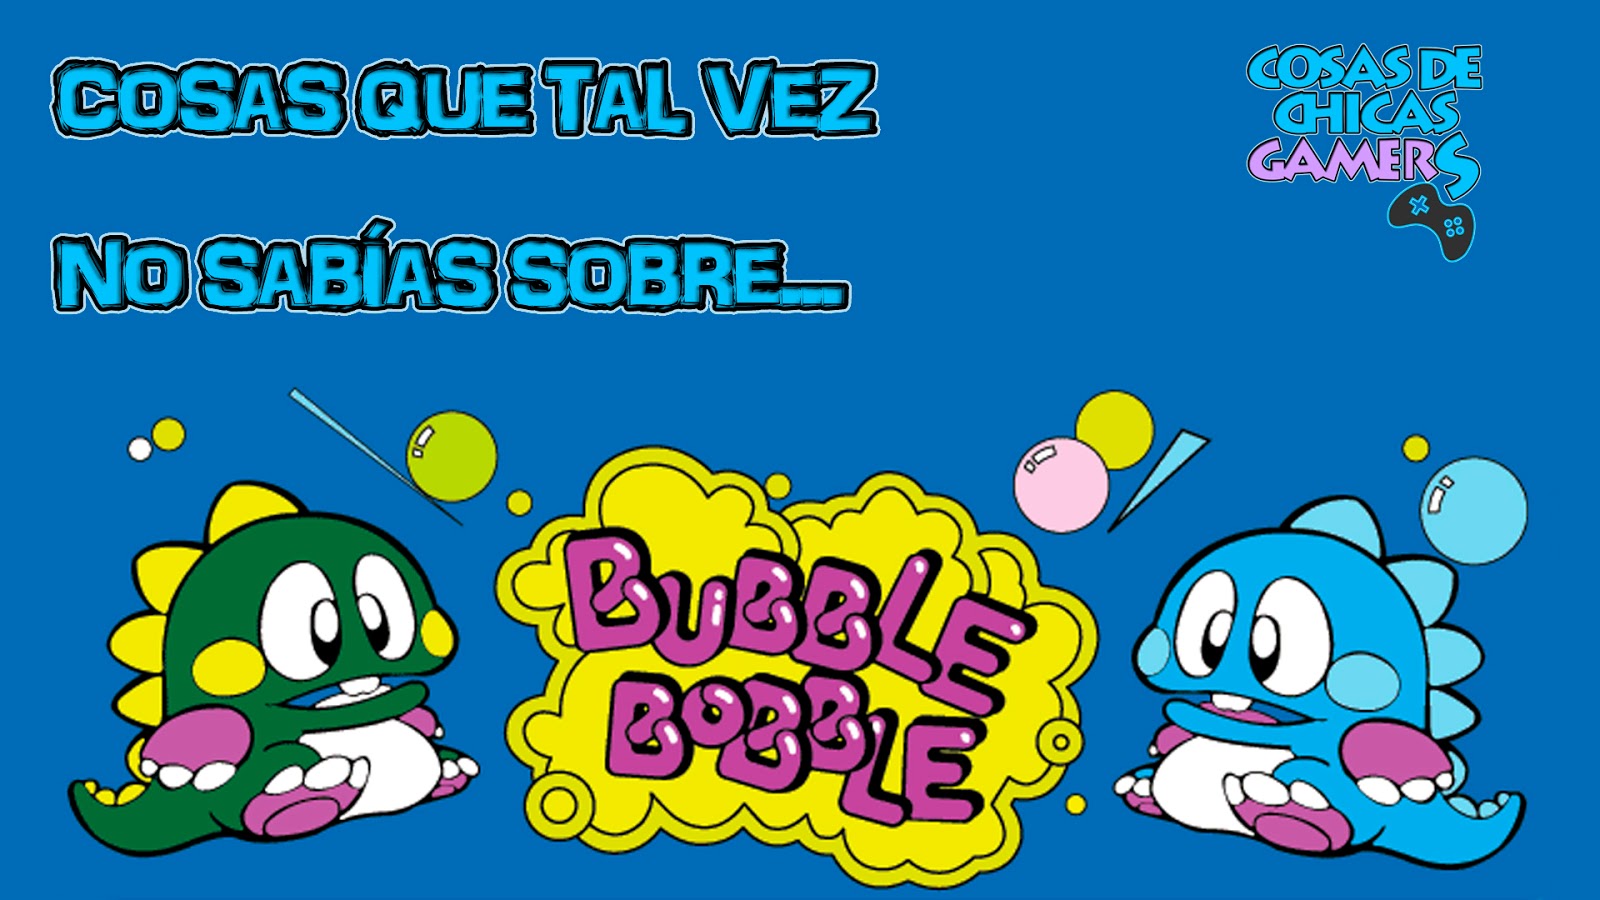 BUBBLE BOBBLE - CURIOSIDADES DEL JUEGO | Cosas Chicas Gamers